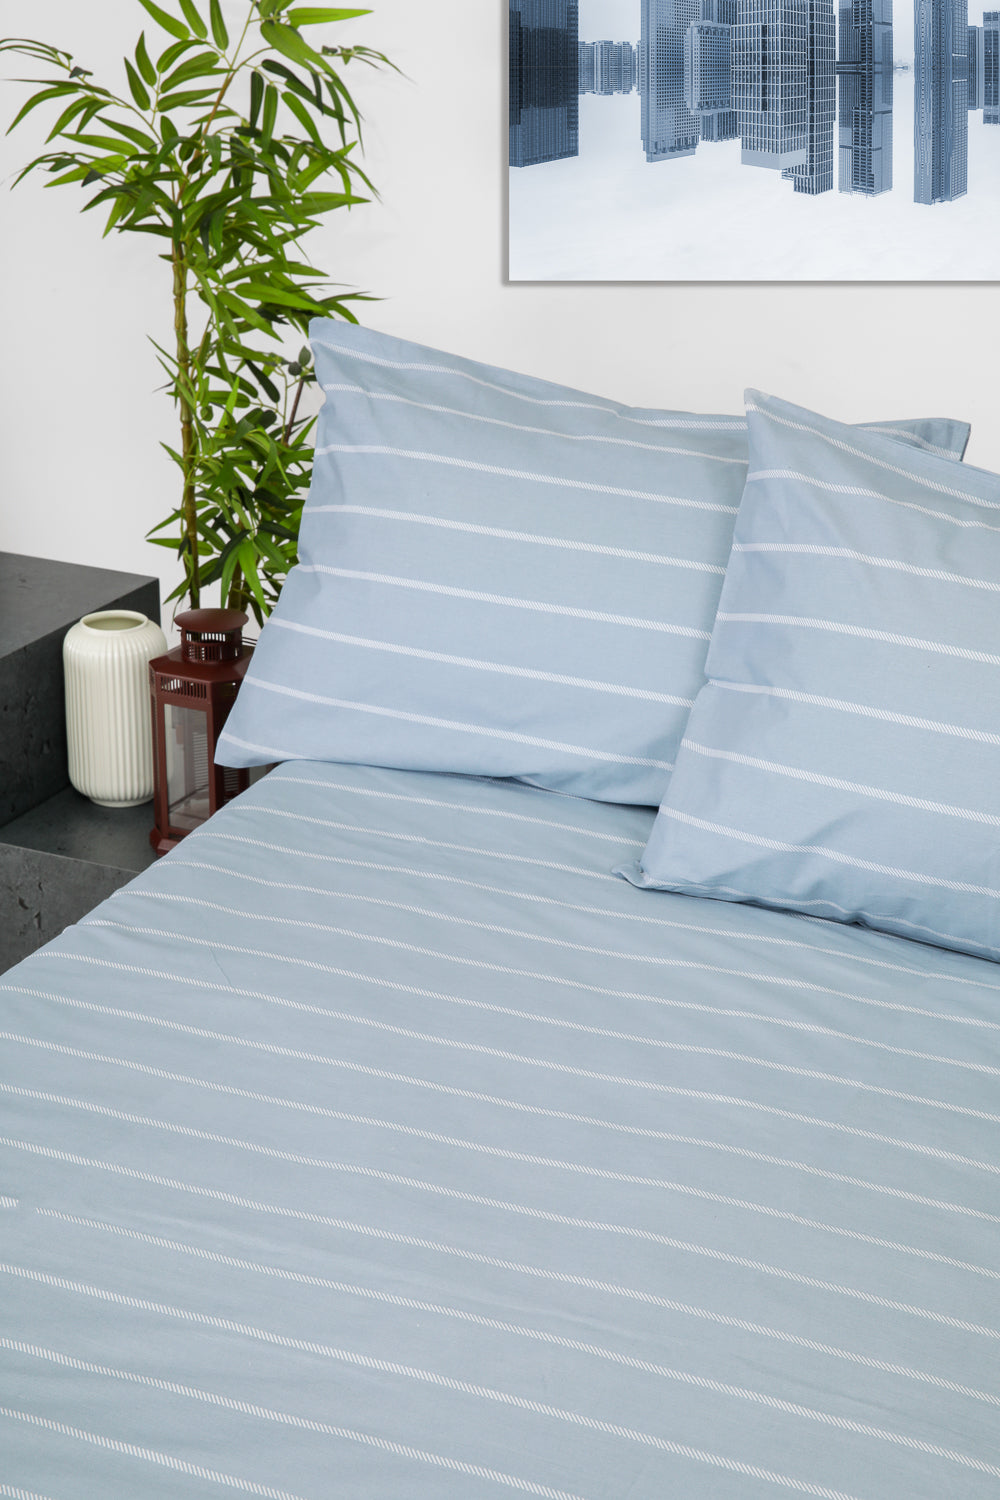 סט מצעים מיטה וחצי 120/200 ס"מ 100% כותנה דגם תהילה גוון לבן וכחול